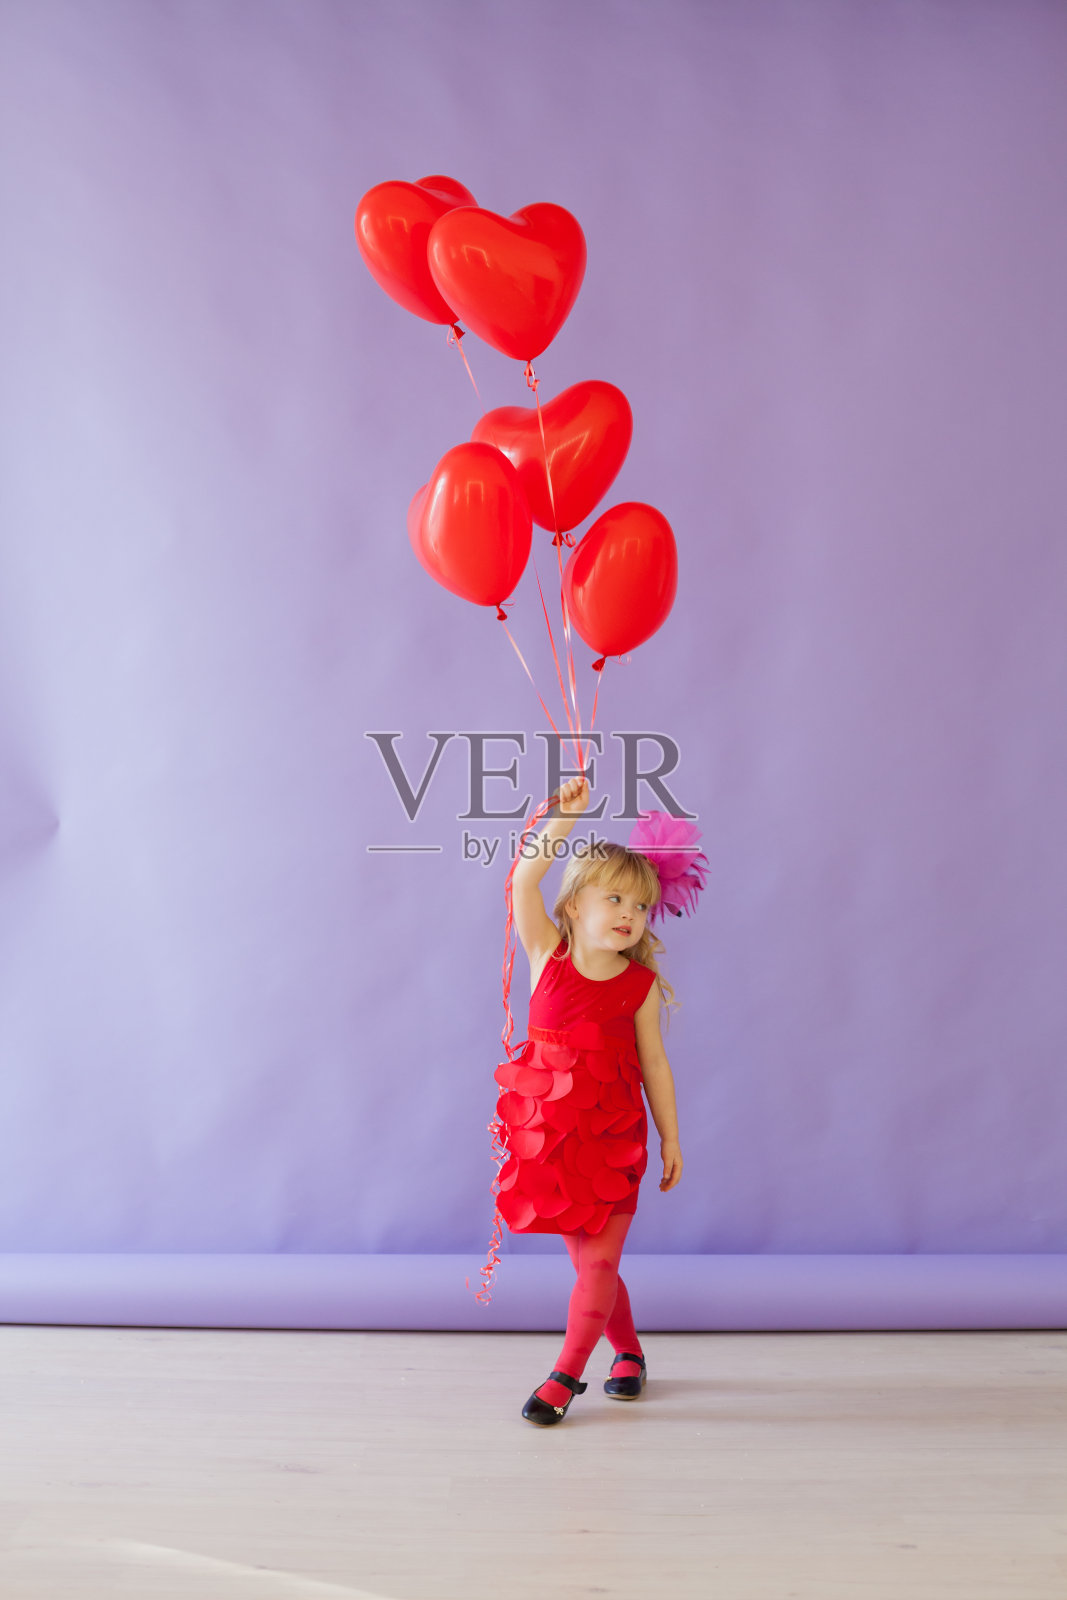 漂亮的女孩坐在红色心形气球上照片摄影图片